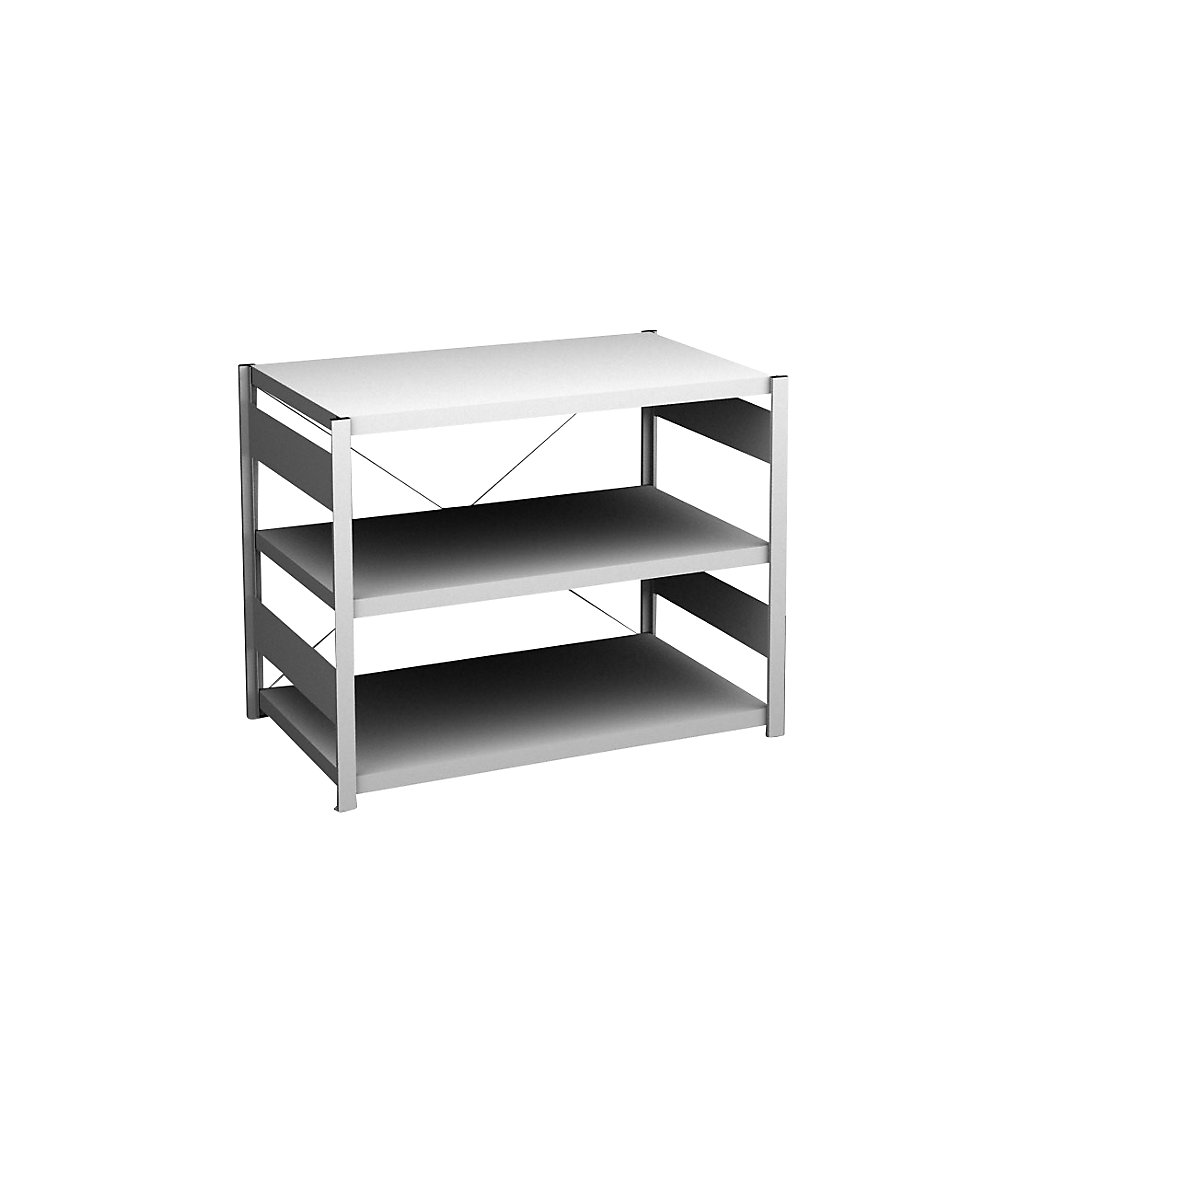 Sideboard shelving unit, light grey – hofe, height 825 mm, 3 shelves, standard shelf unit, shelf depth 600 mm, max. shelf load 140 kg-9